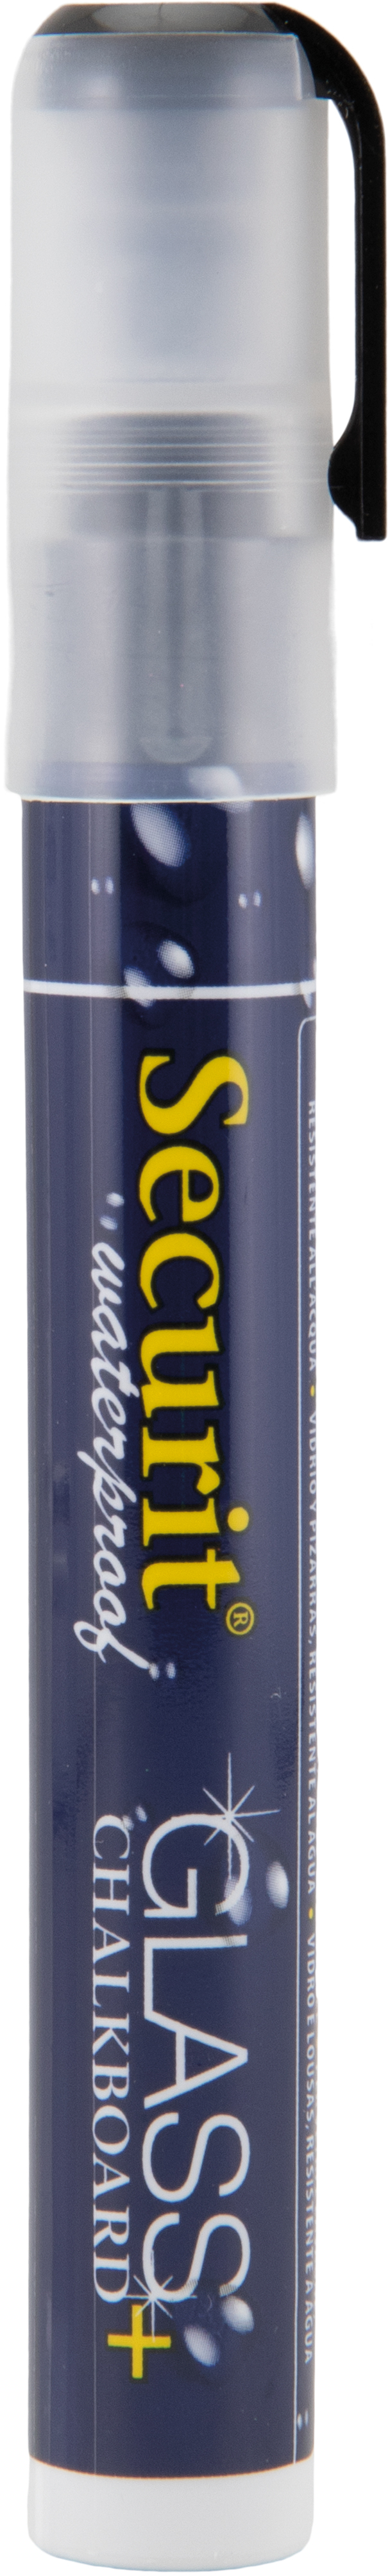 SECURIT Marker Craie 2-6mm SMA610-BL noir, imperméable